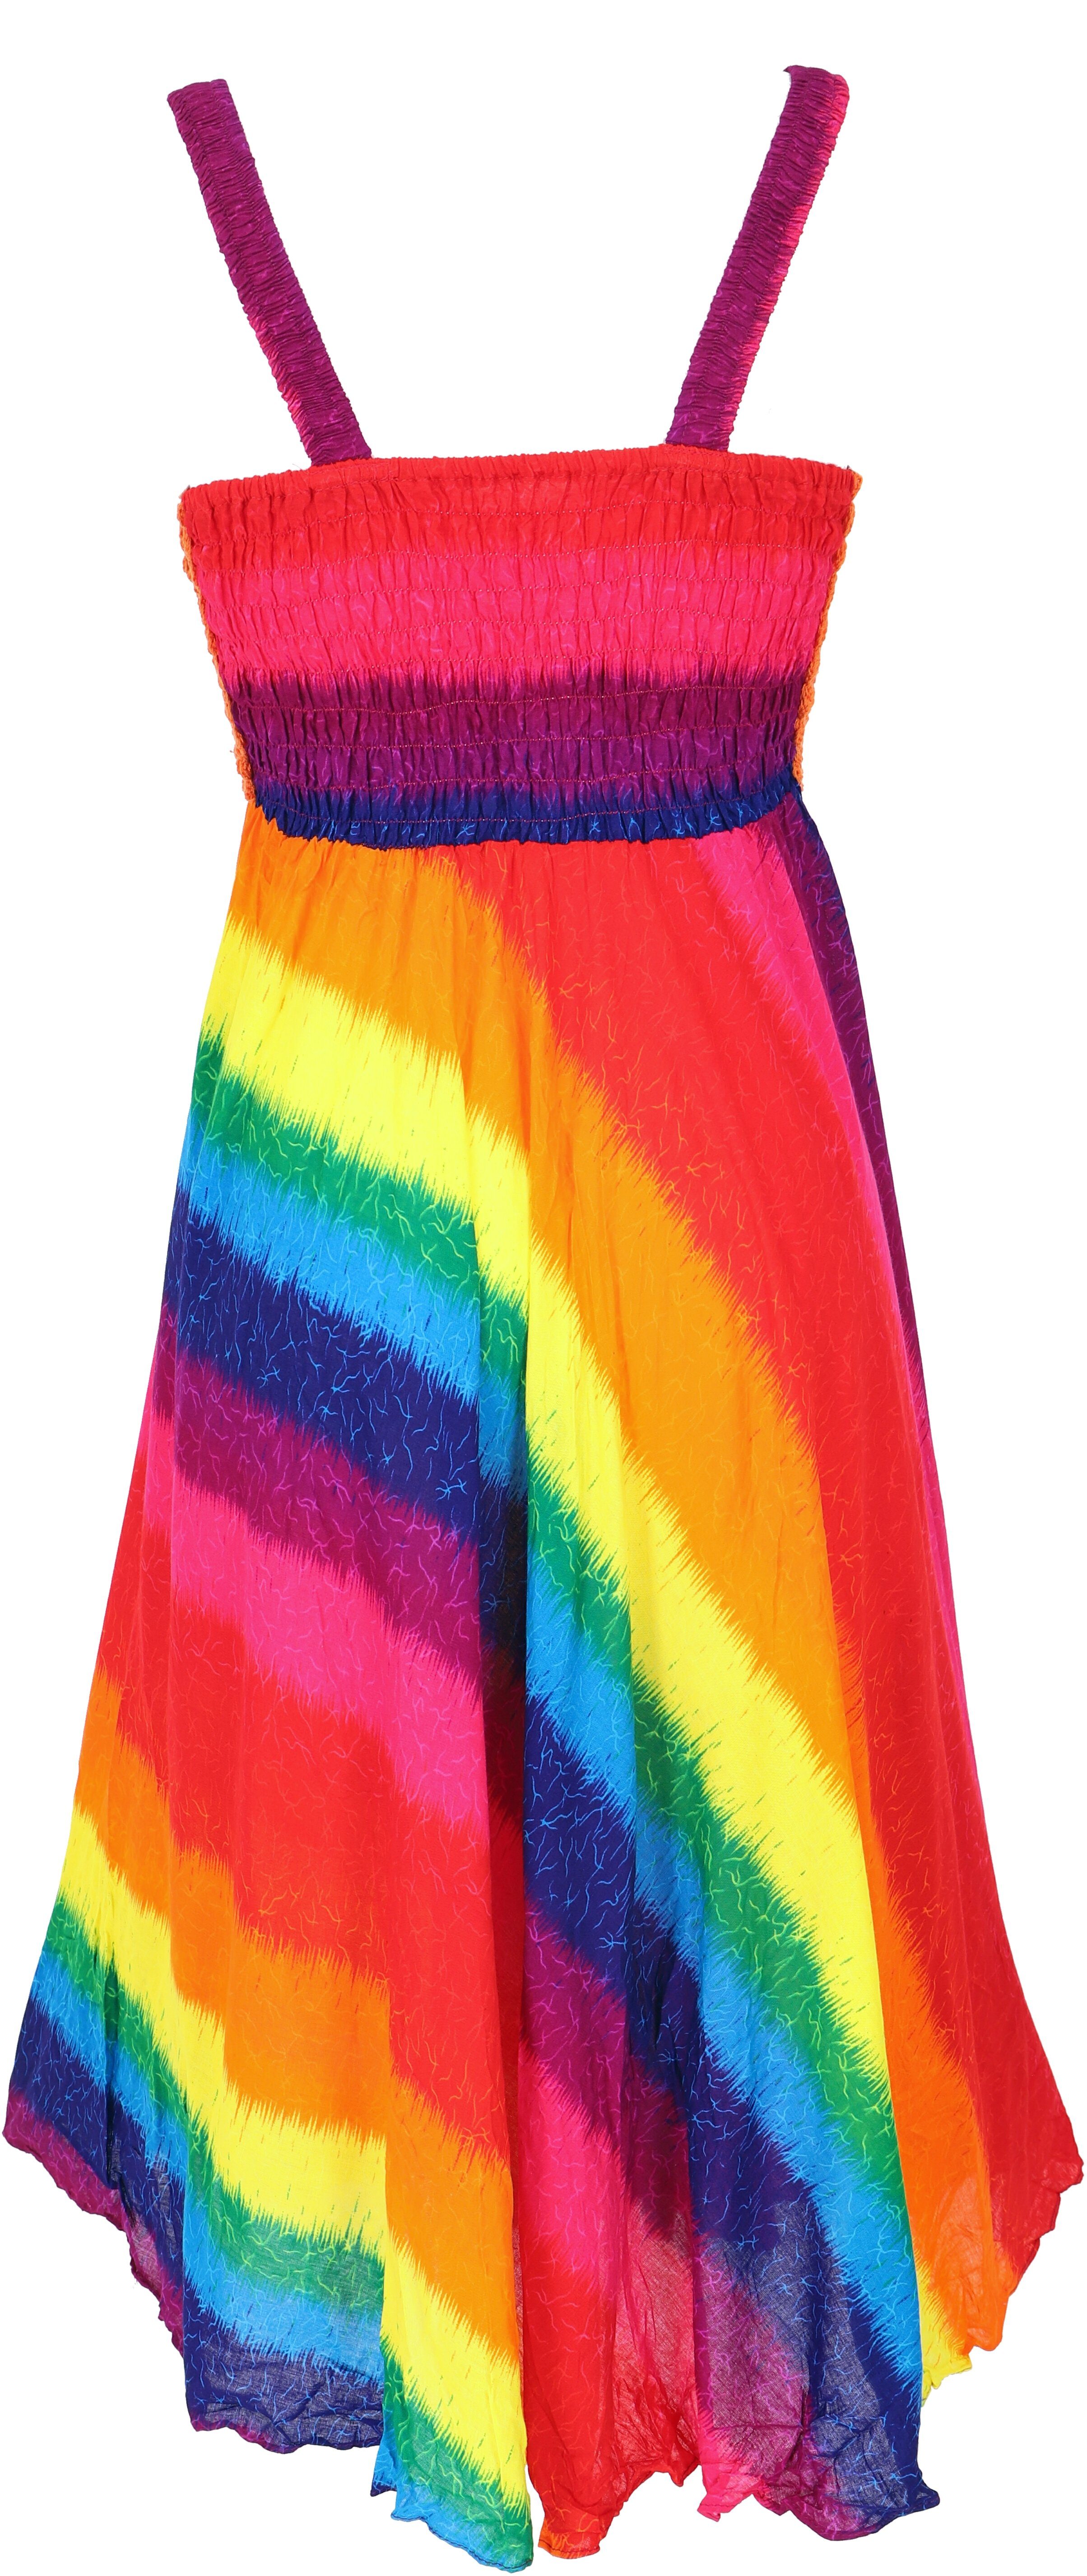 Bekleidung regenbogen/orange -.. Krinkelkleid Sommerkleid, Midikleid Minikleid, Guru-Shop Boho alternative